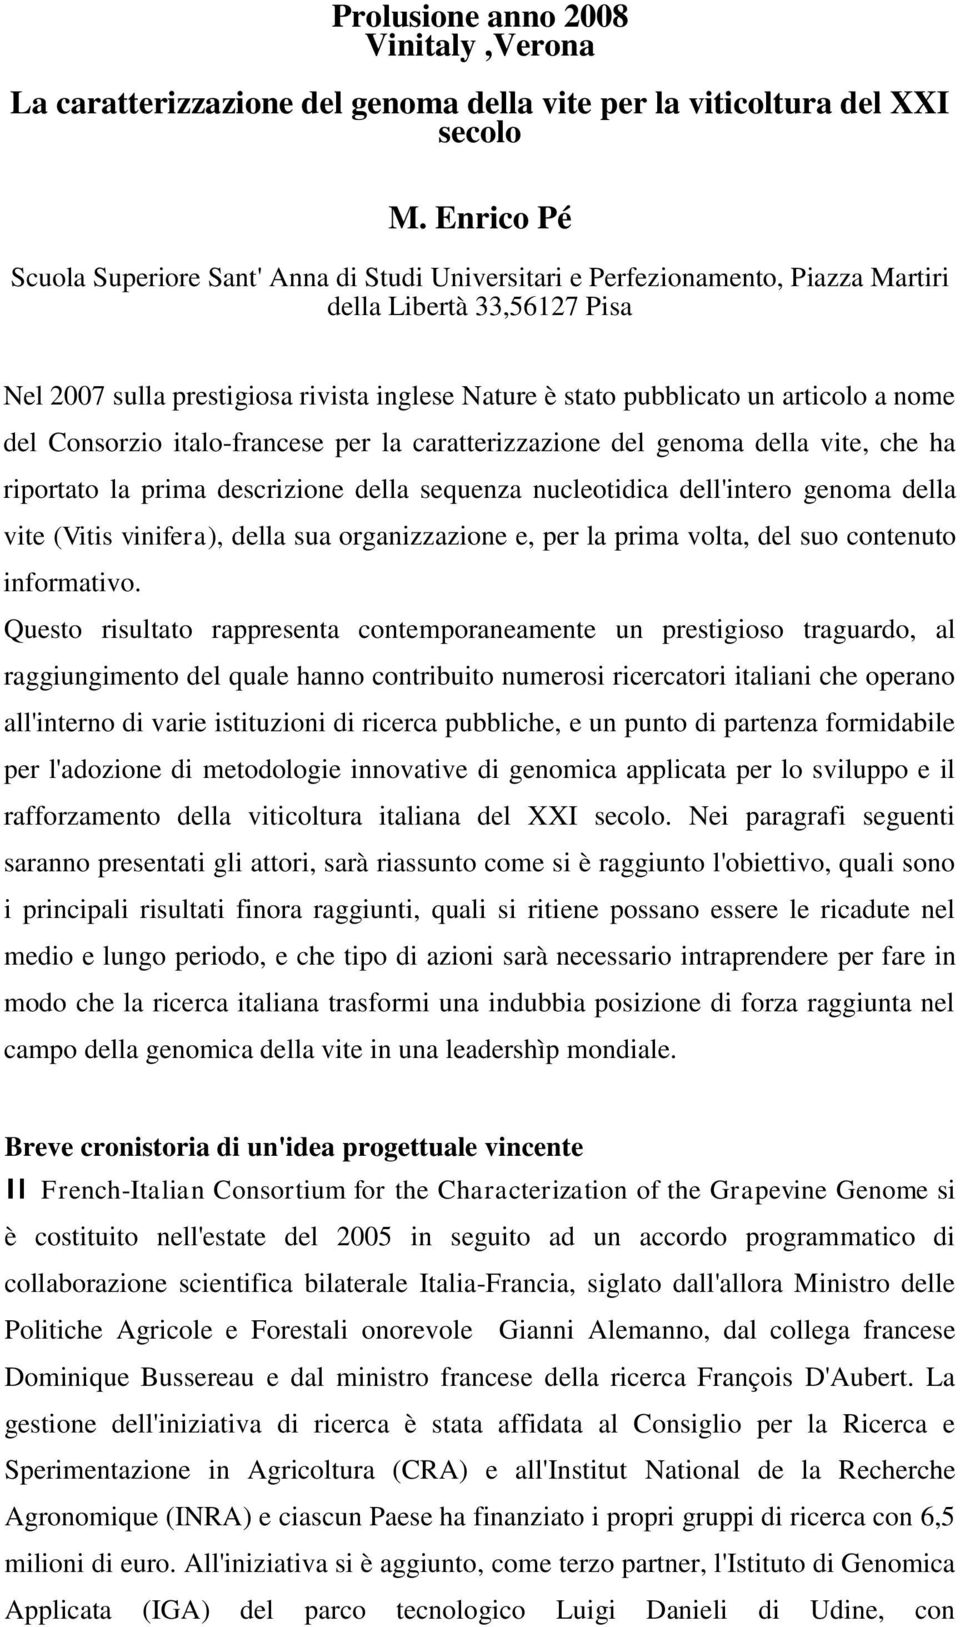 articolo a nome del Consorzio italo-francese per la caratterizzazione del genoma della vite, che ha riportato la prima descrizione della sequenza nucleotidica dell'intero genoma della vite (Vitis